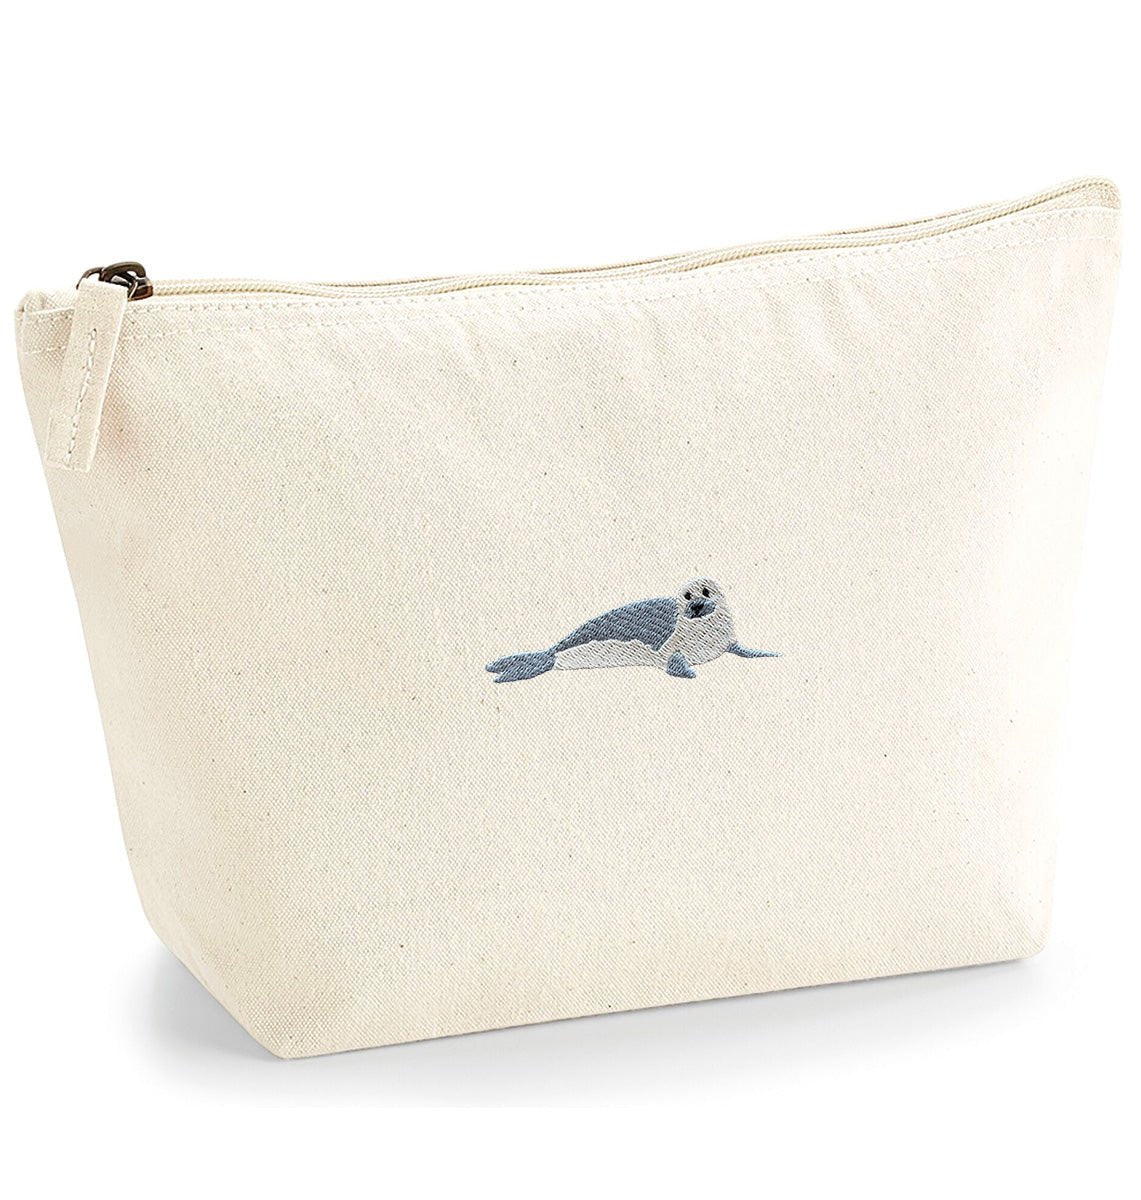 Seal Organic Accessory Bag - Blue Panda